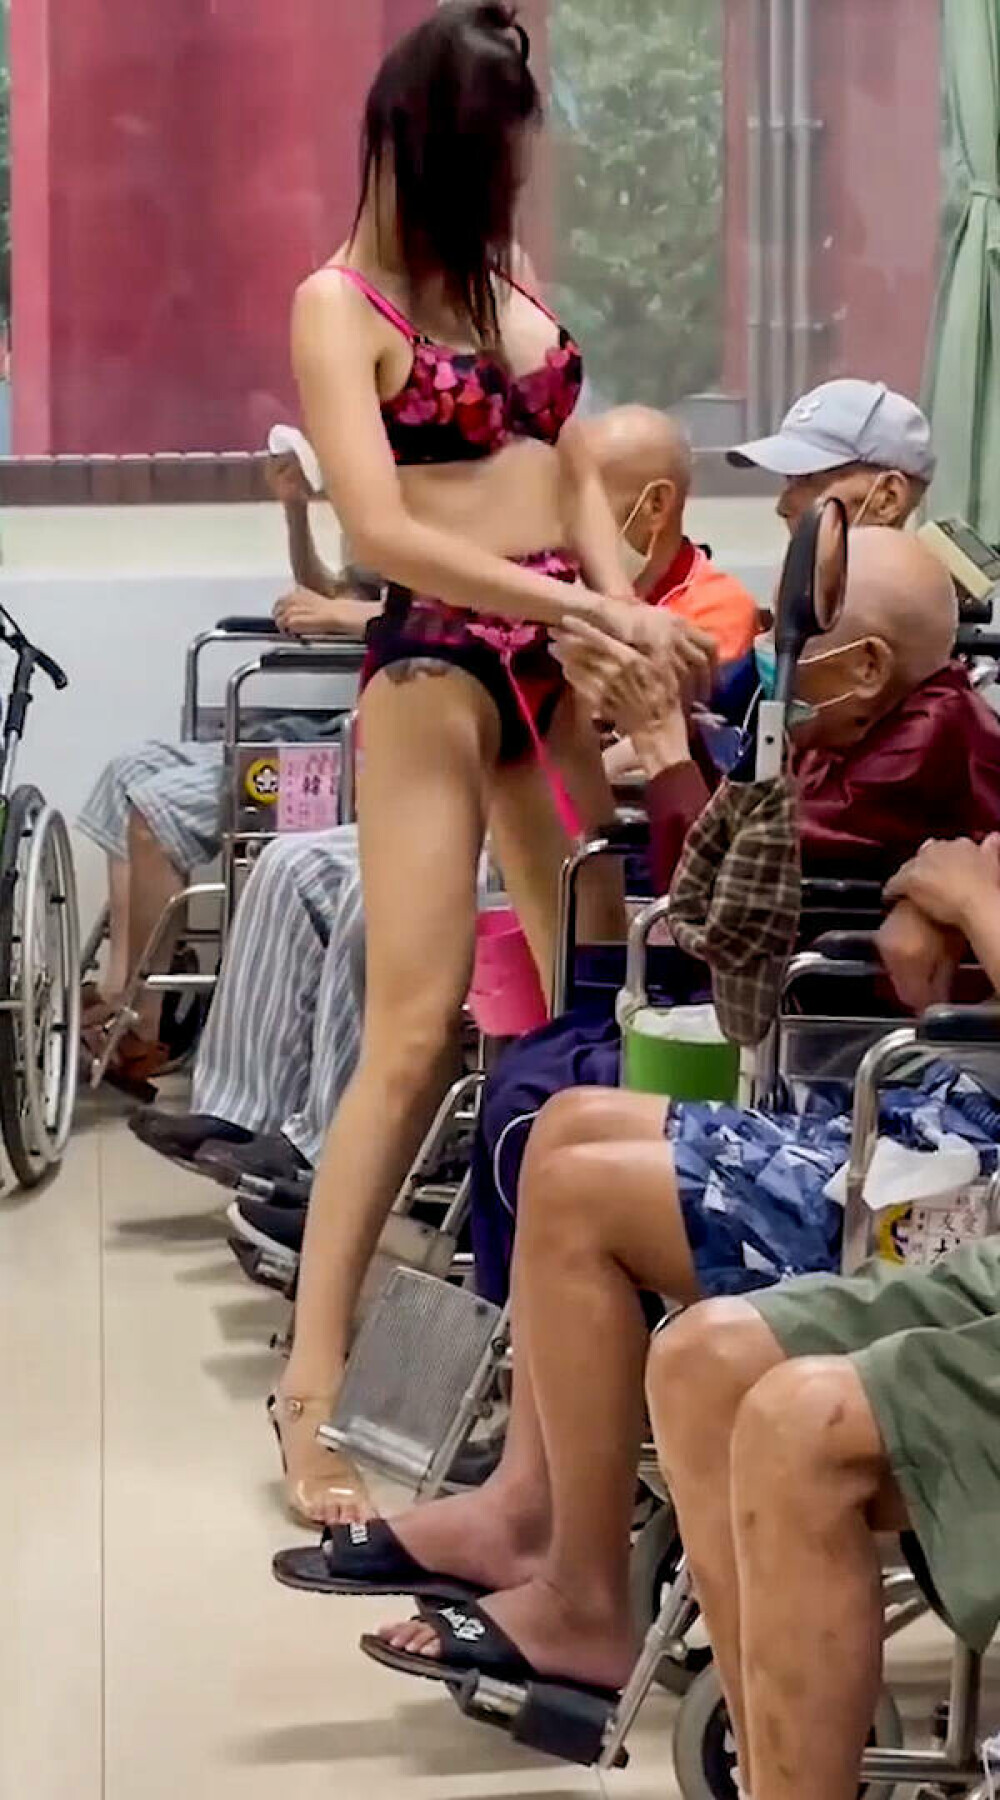 Un azil de bătrâni a adus o stripteuză pentru rezidenți. Cum au reacționat pensionarii. FOTO - Imaginea 4